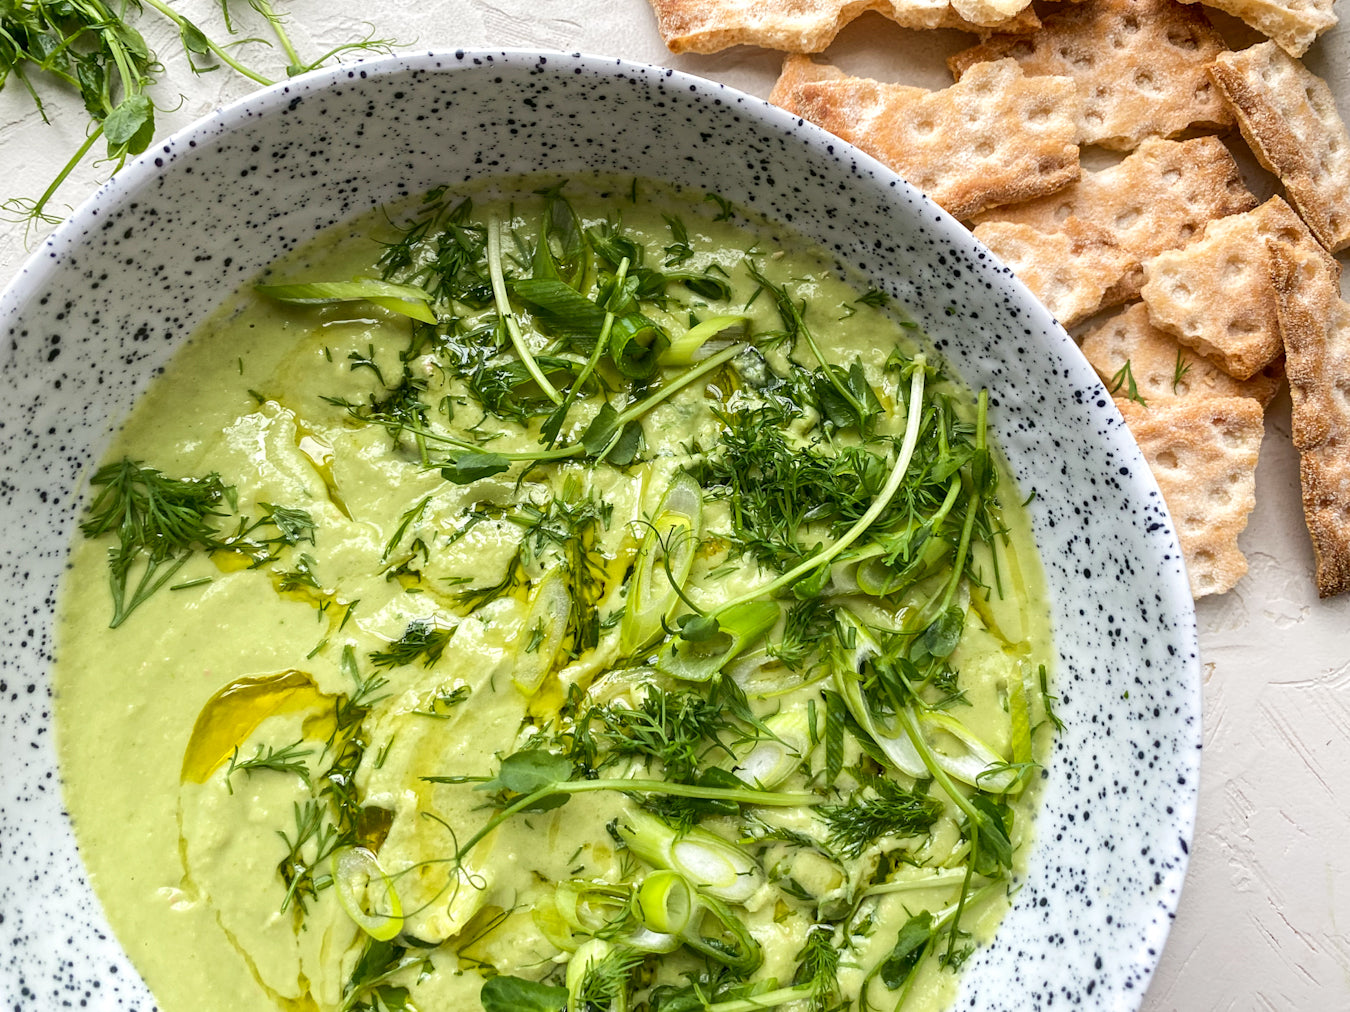 Spring Green Butter Bean “Hummus” Recipe